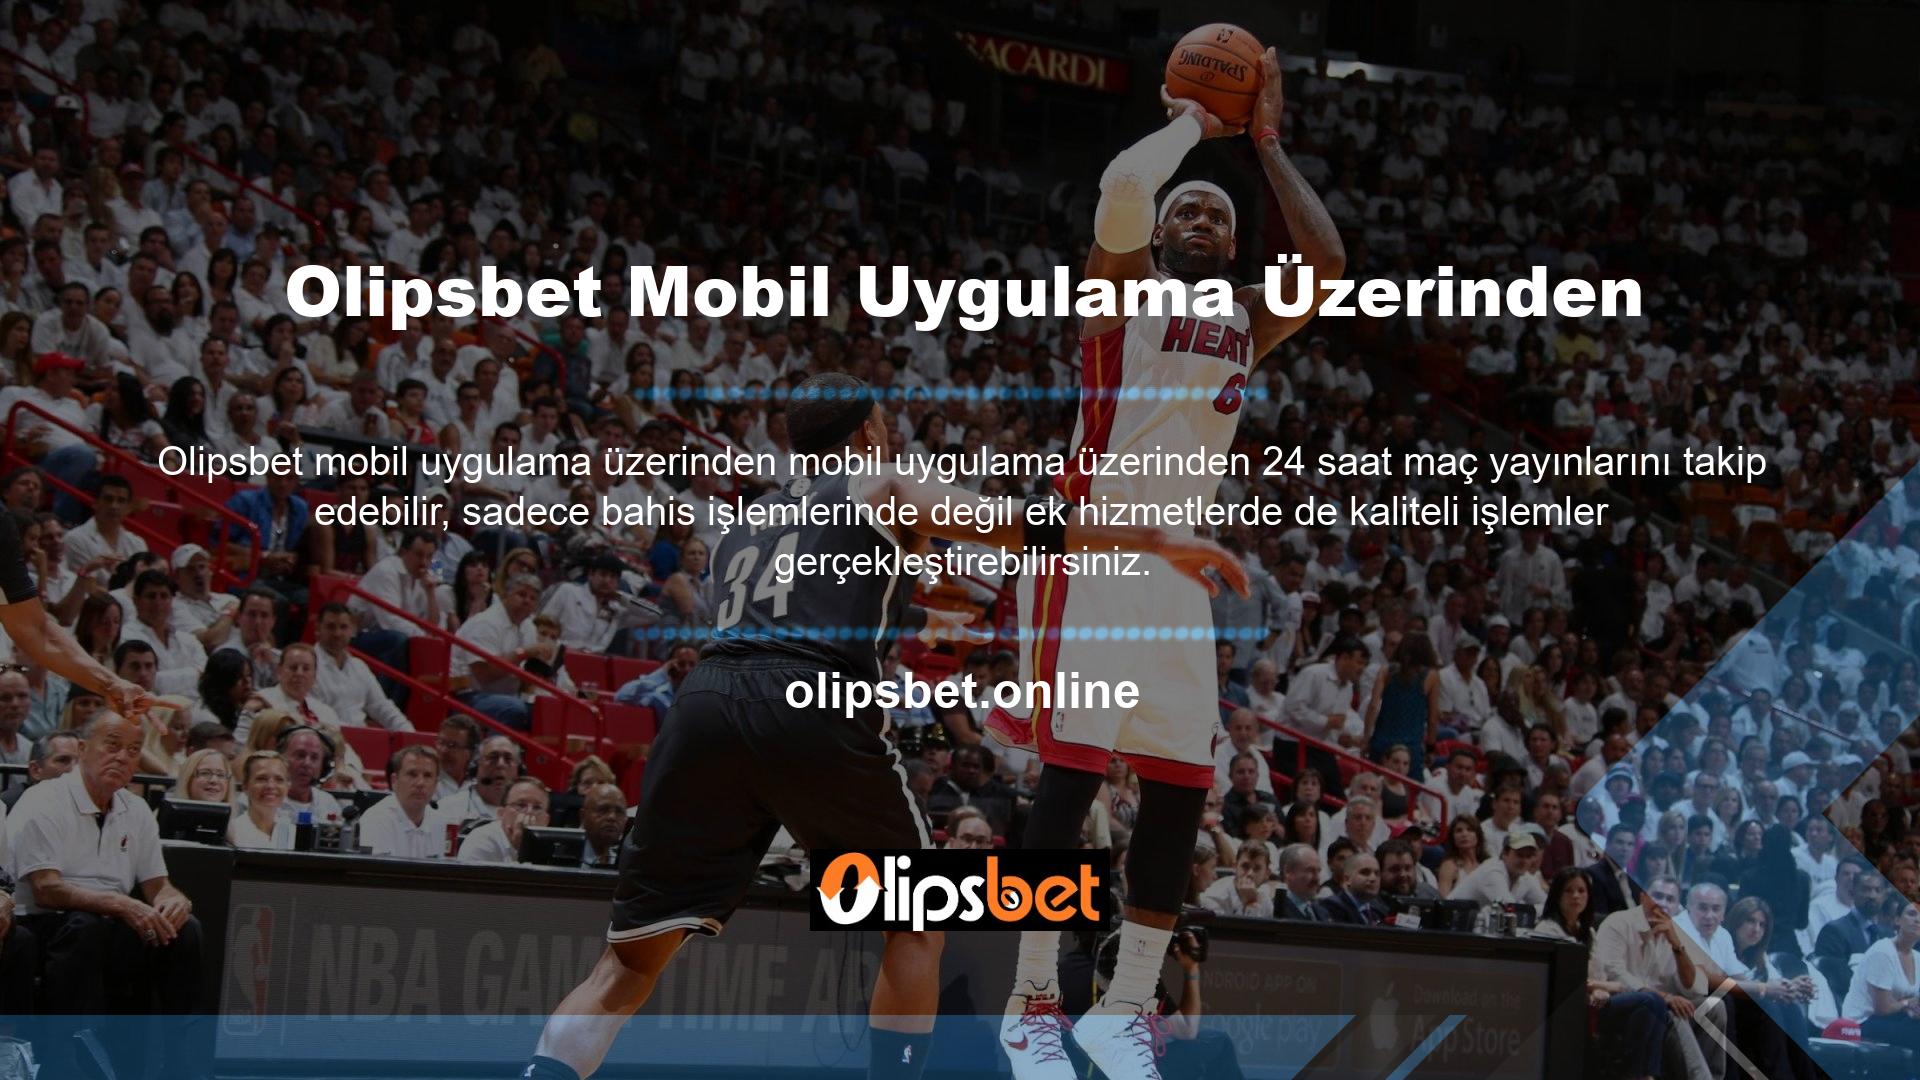 Olipsbet, en kapsamlı kullanıcı destek iletişim kanalı olan Canlı Destek Grubumuz aracılığıyla birçok konuda bilgi vermektedir